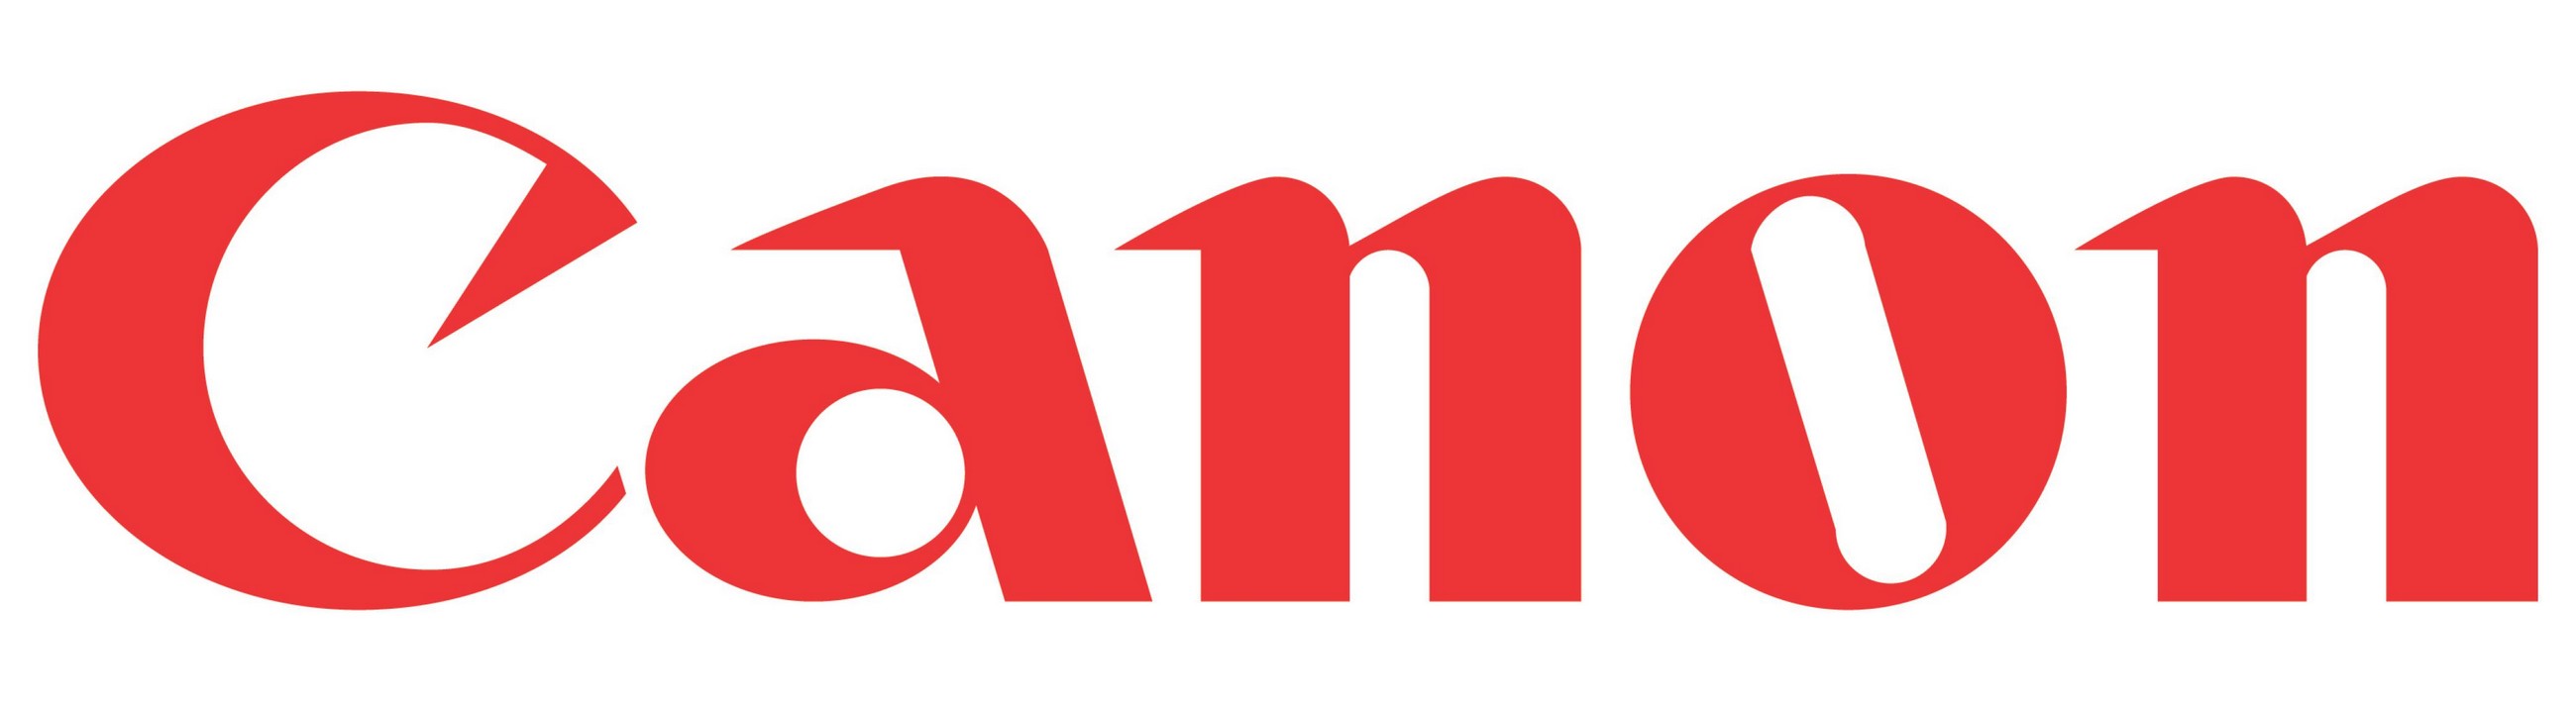 Canon Logo Clip Art